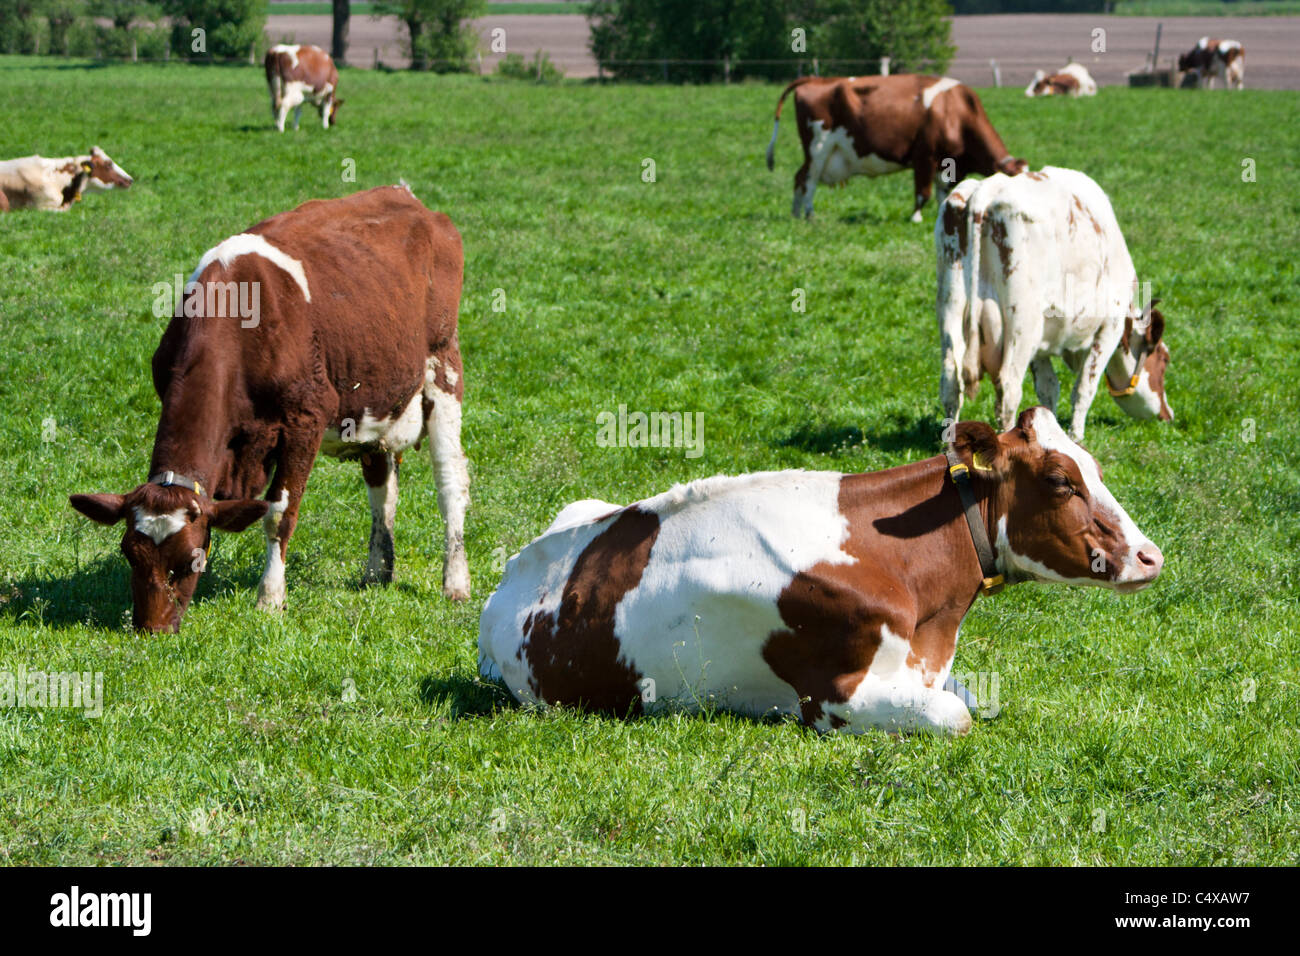 Cows on a farmland Stock Photo